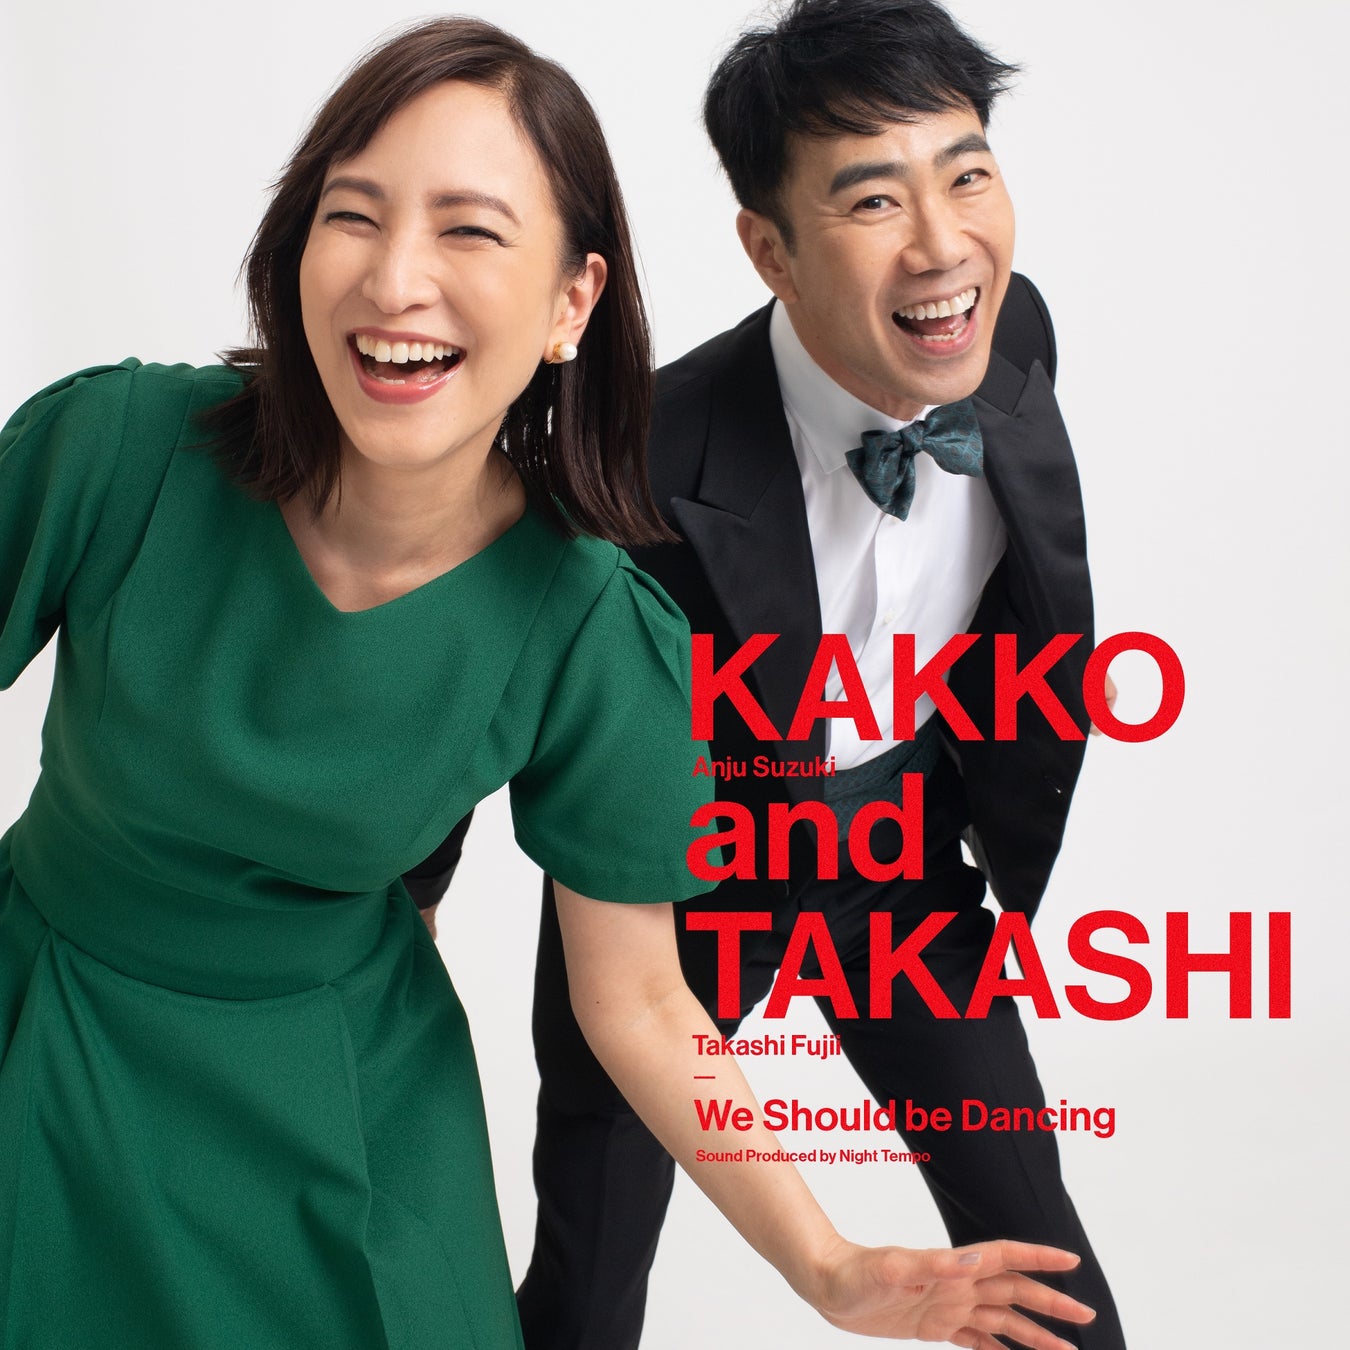 藤井隆、今秋発売予定のアルバムから先行配信第2弾！  KAKKO (Anju Suzuki) and TAKASHI (Takashi Fujii)   「We Should be Dancing 」